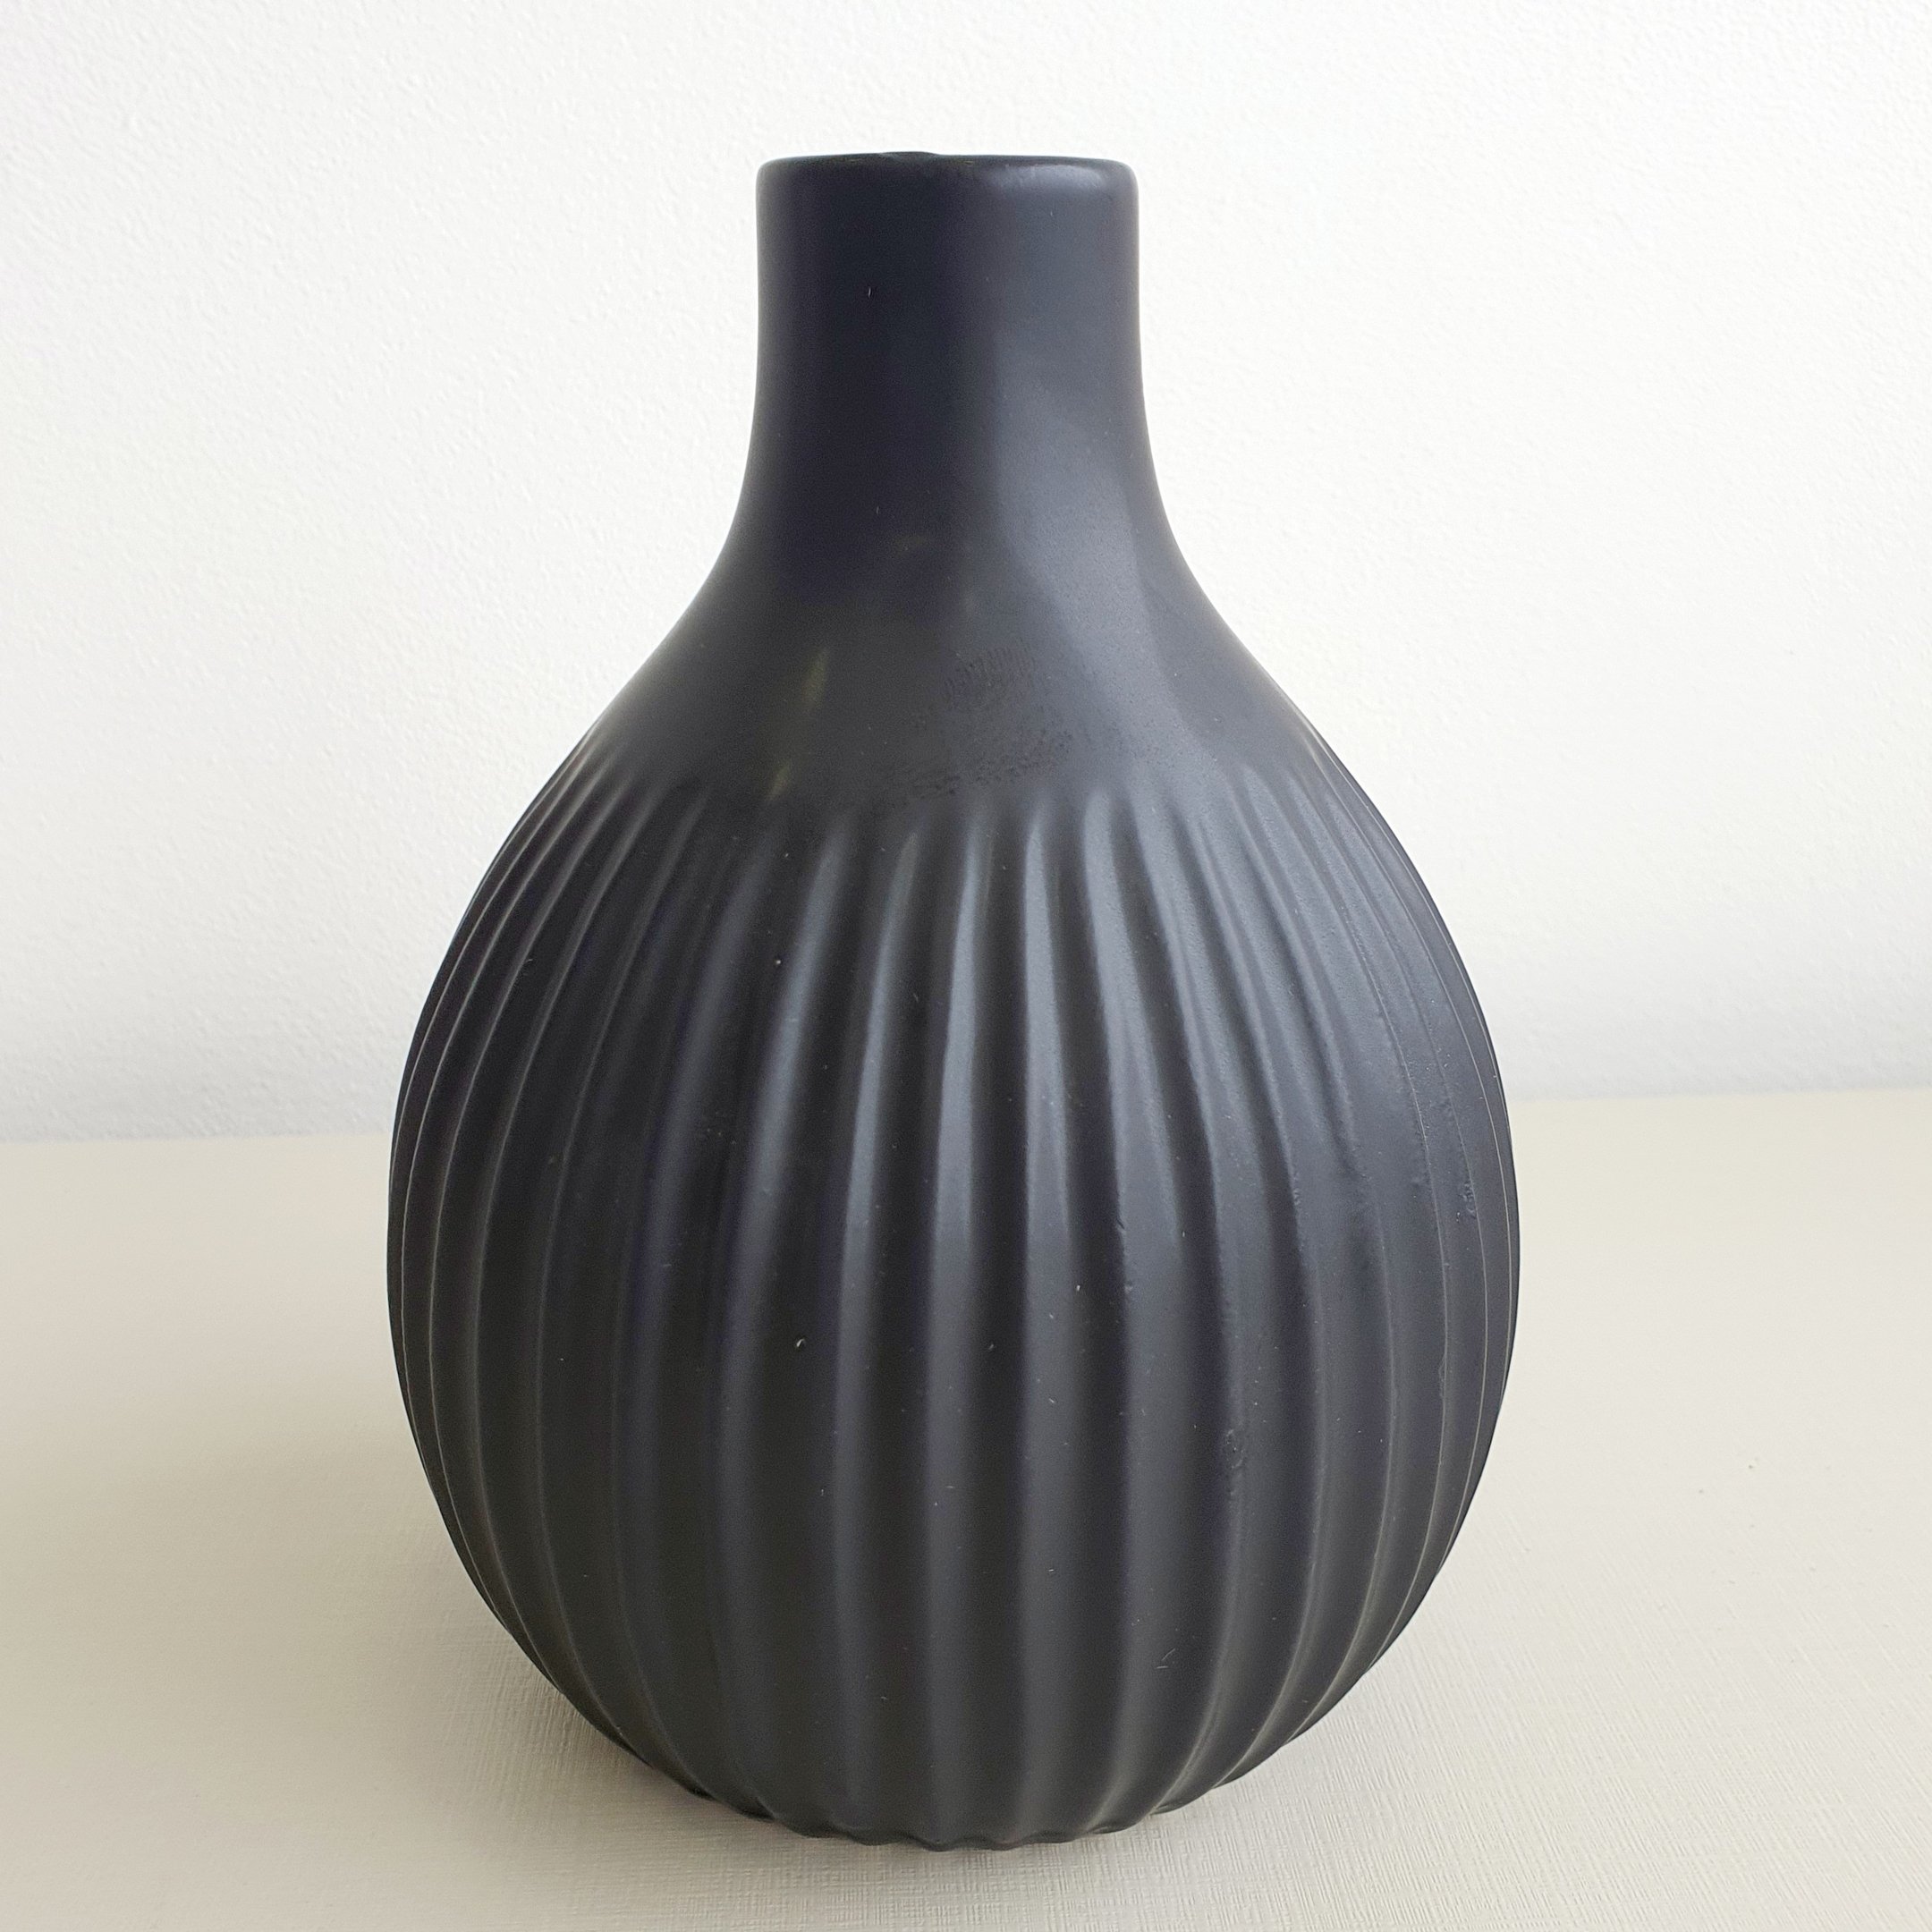 Vaso de Vidro Canelado Preto Fosco 17 cm